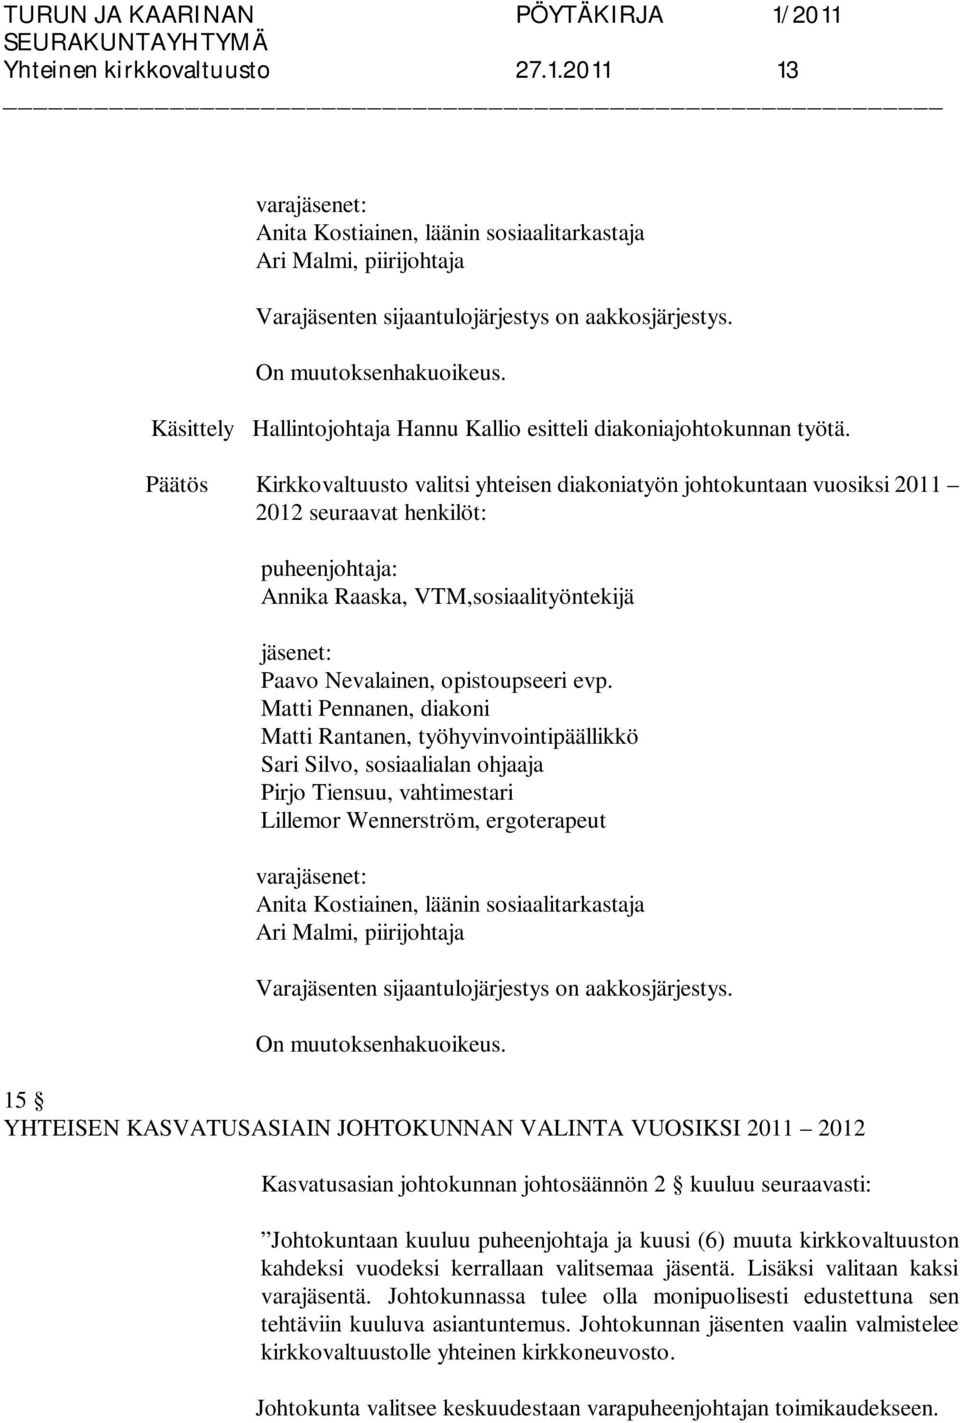 Päätös Kirkkovaltuusto valitsi yhteisen diakoniatyön johtokuntaan vuosiksi 2011 2012 seuraavat henkilöt: Annika Raaska, VTM,sosiaalityöntekijä Paavo Nevalainen, opistoupseeri evp.